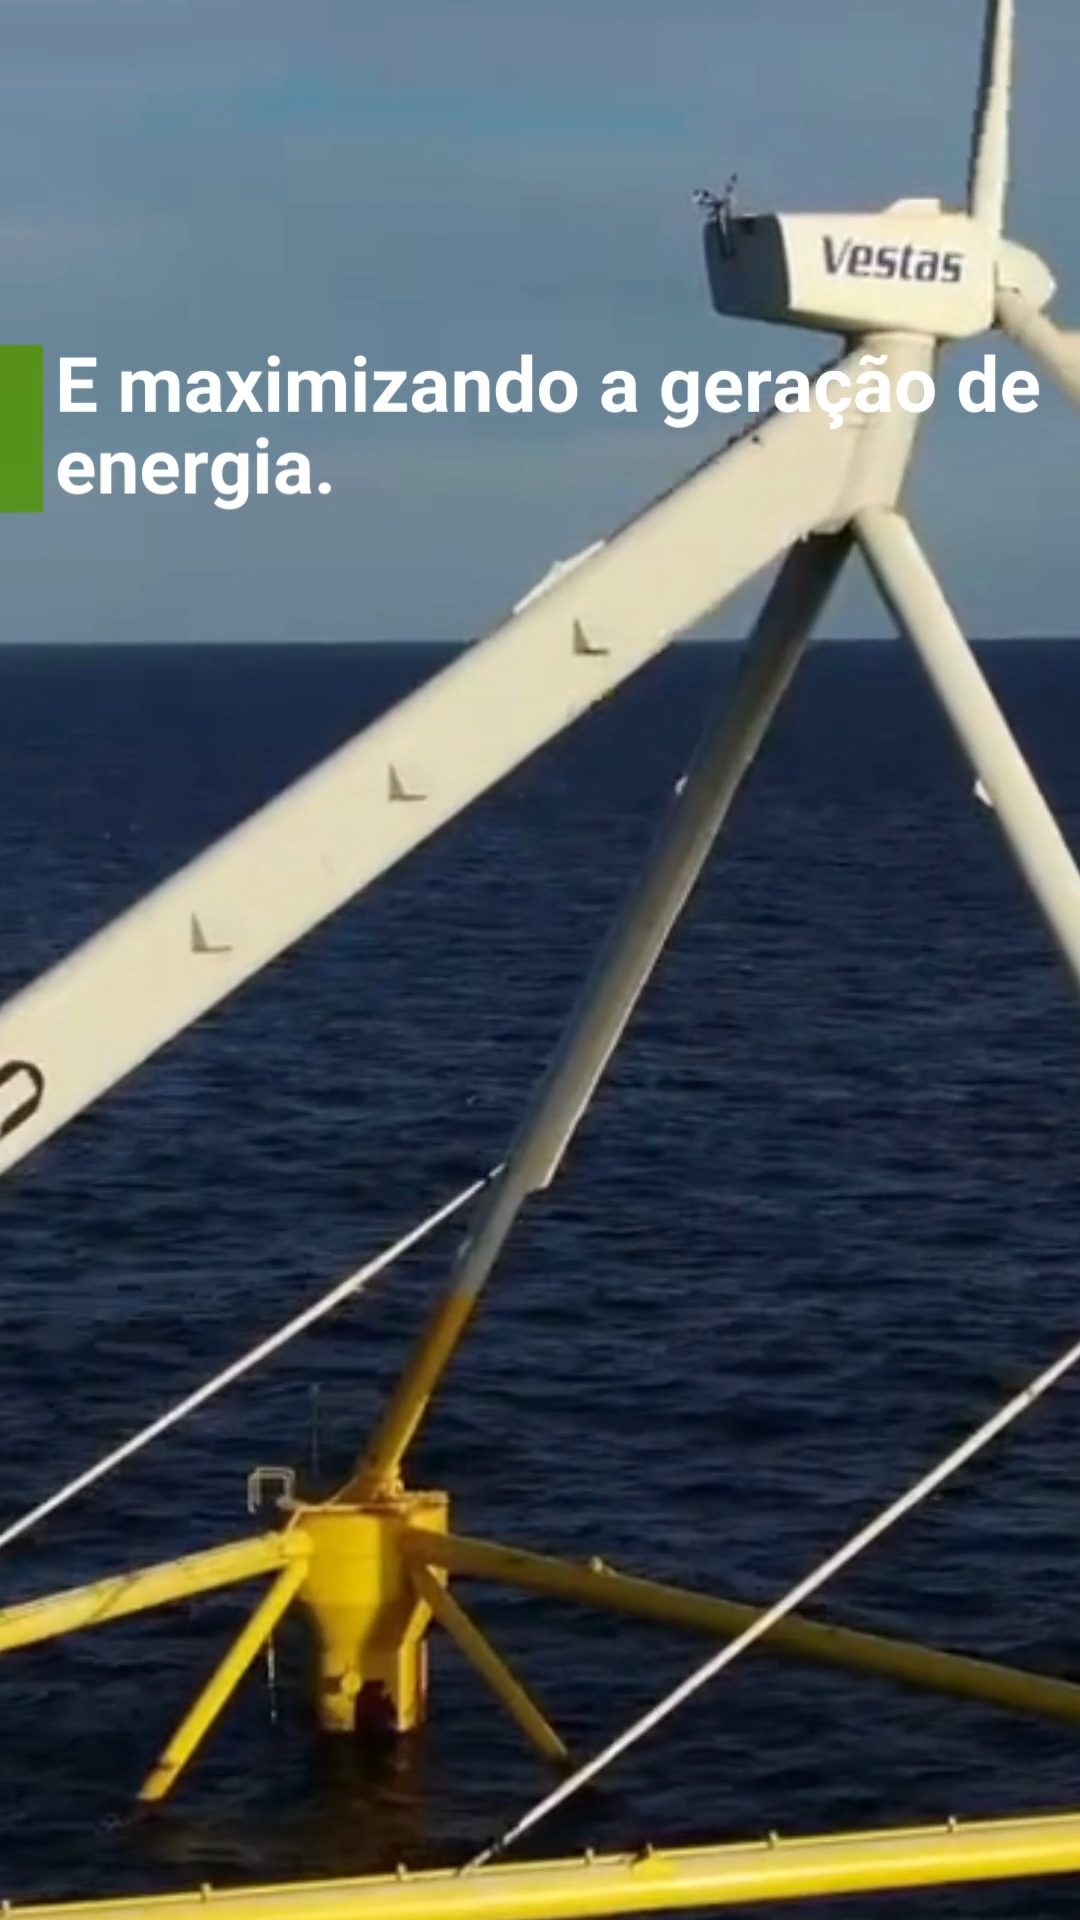 Turbina eólica flutuante move-se na direção do vento para gerar energia